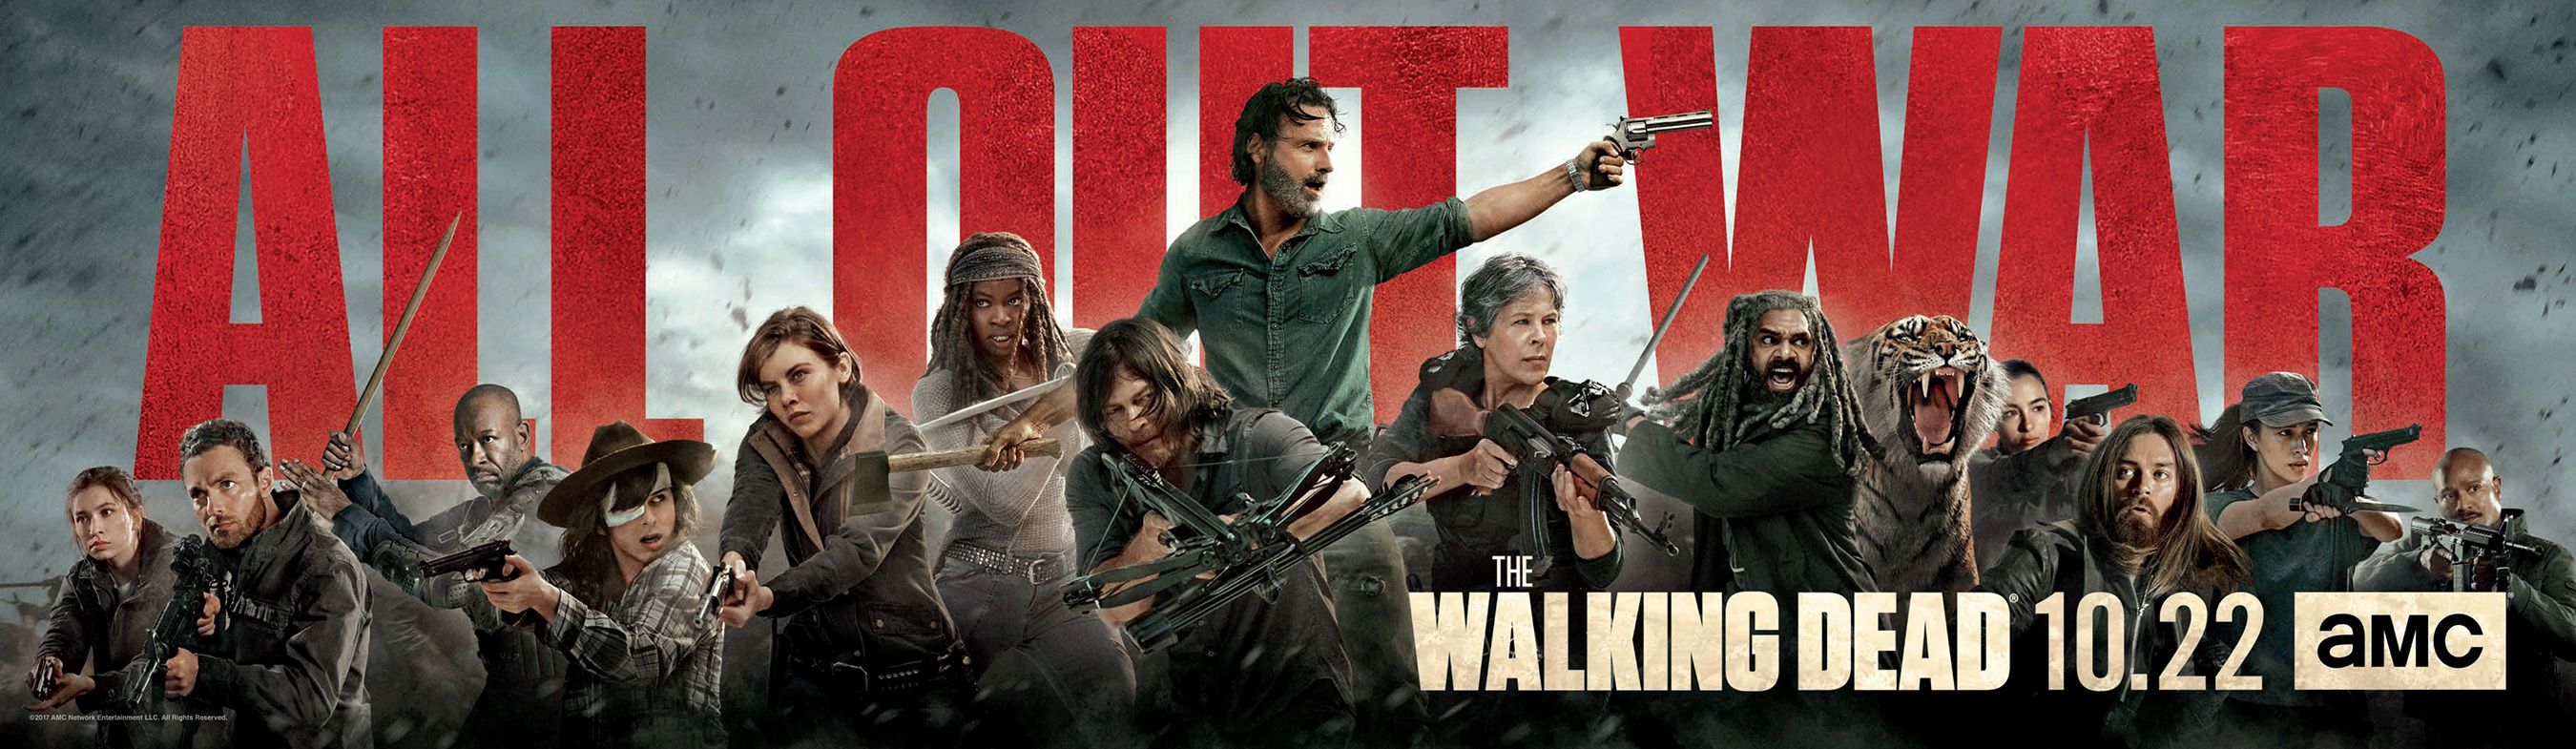 Walking Dead Season 8 All Out War Poster